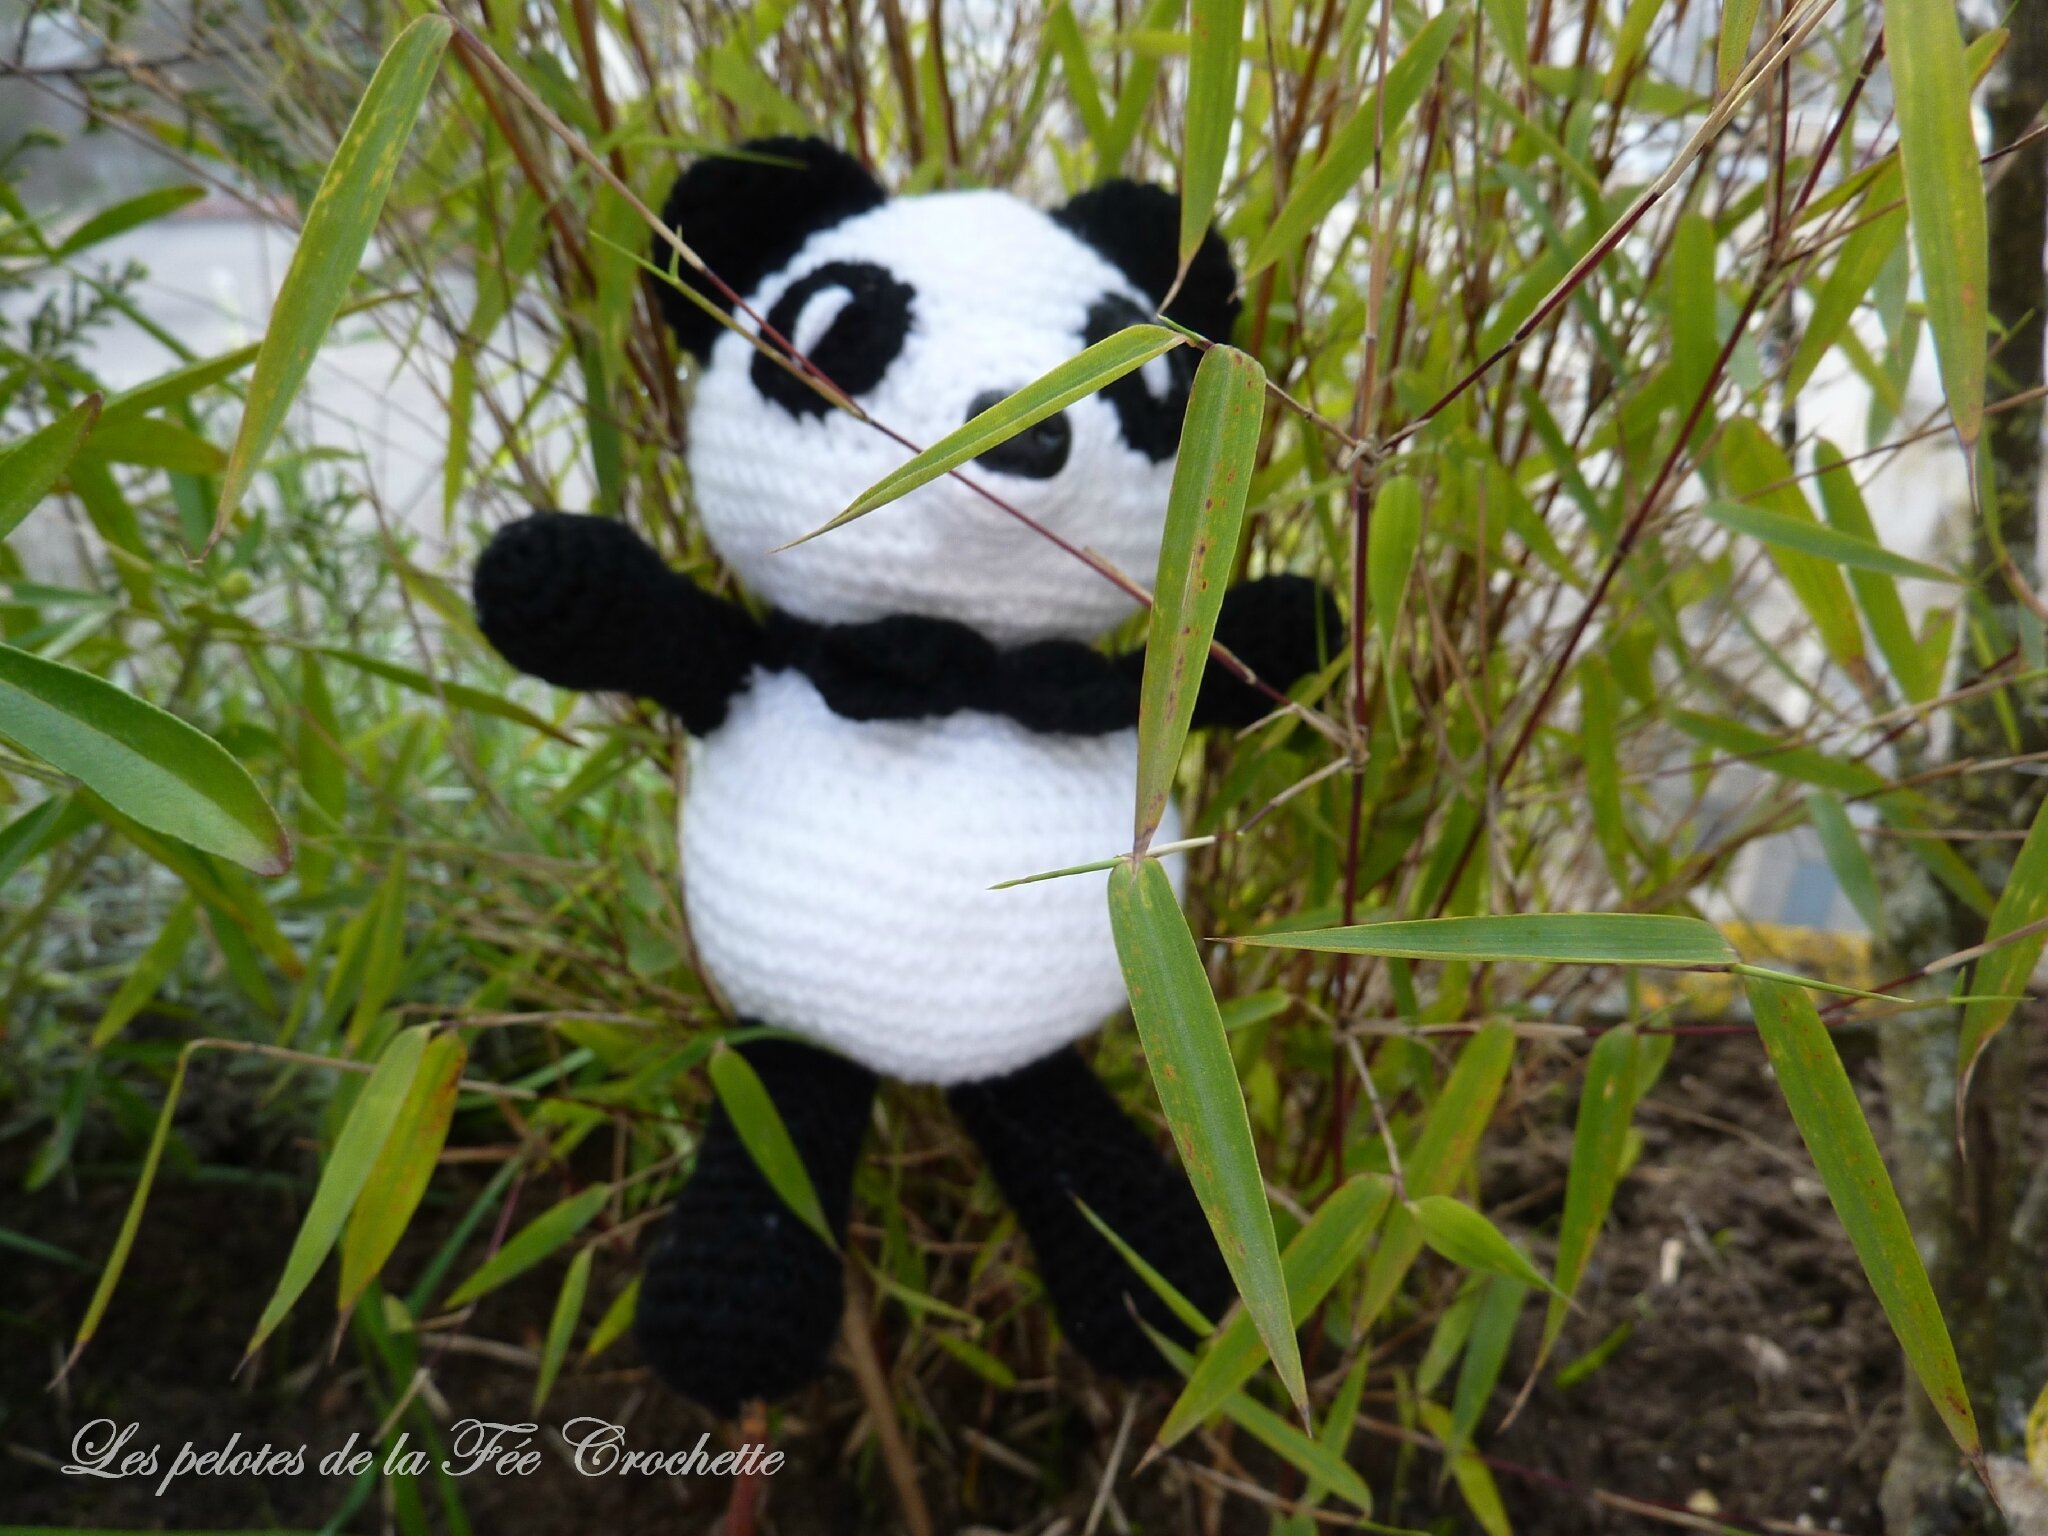 Panda crochet